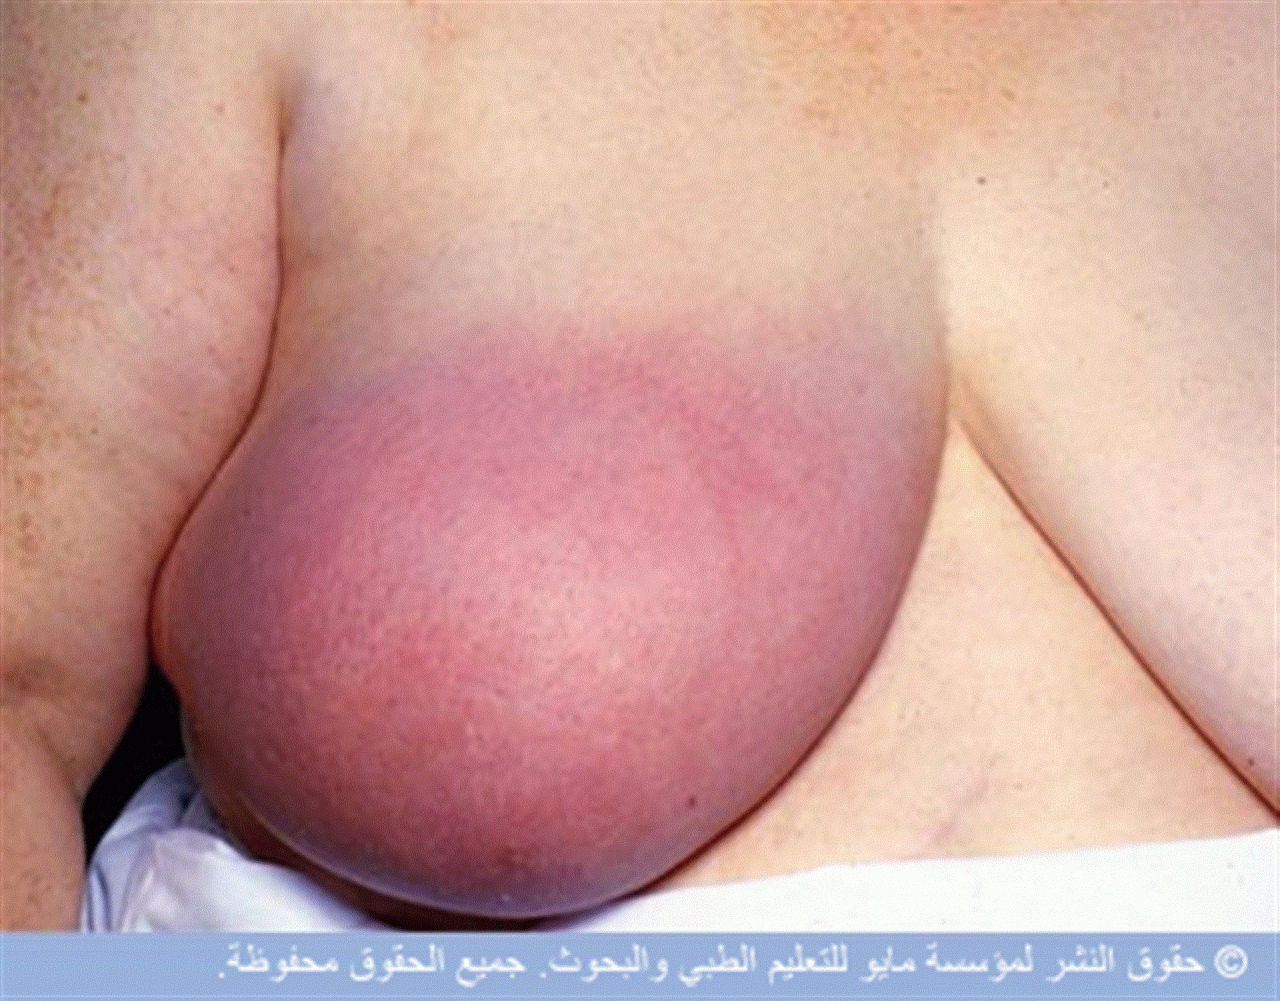 аллергия на грудях у кормящей мамы фото 63